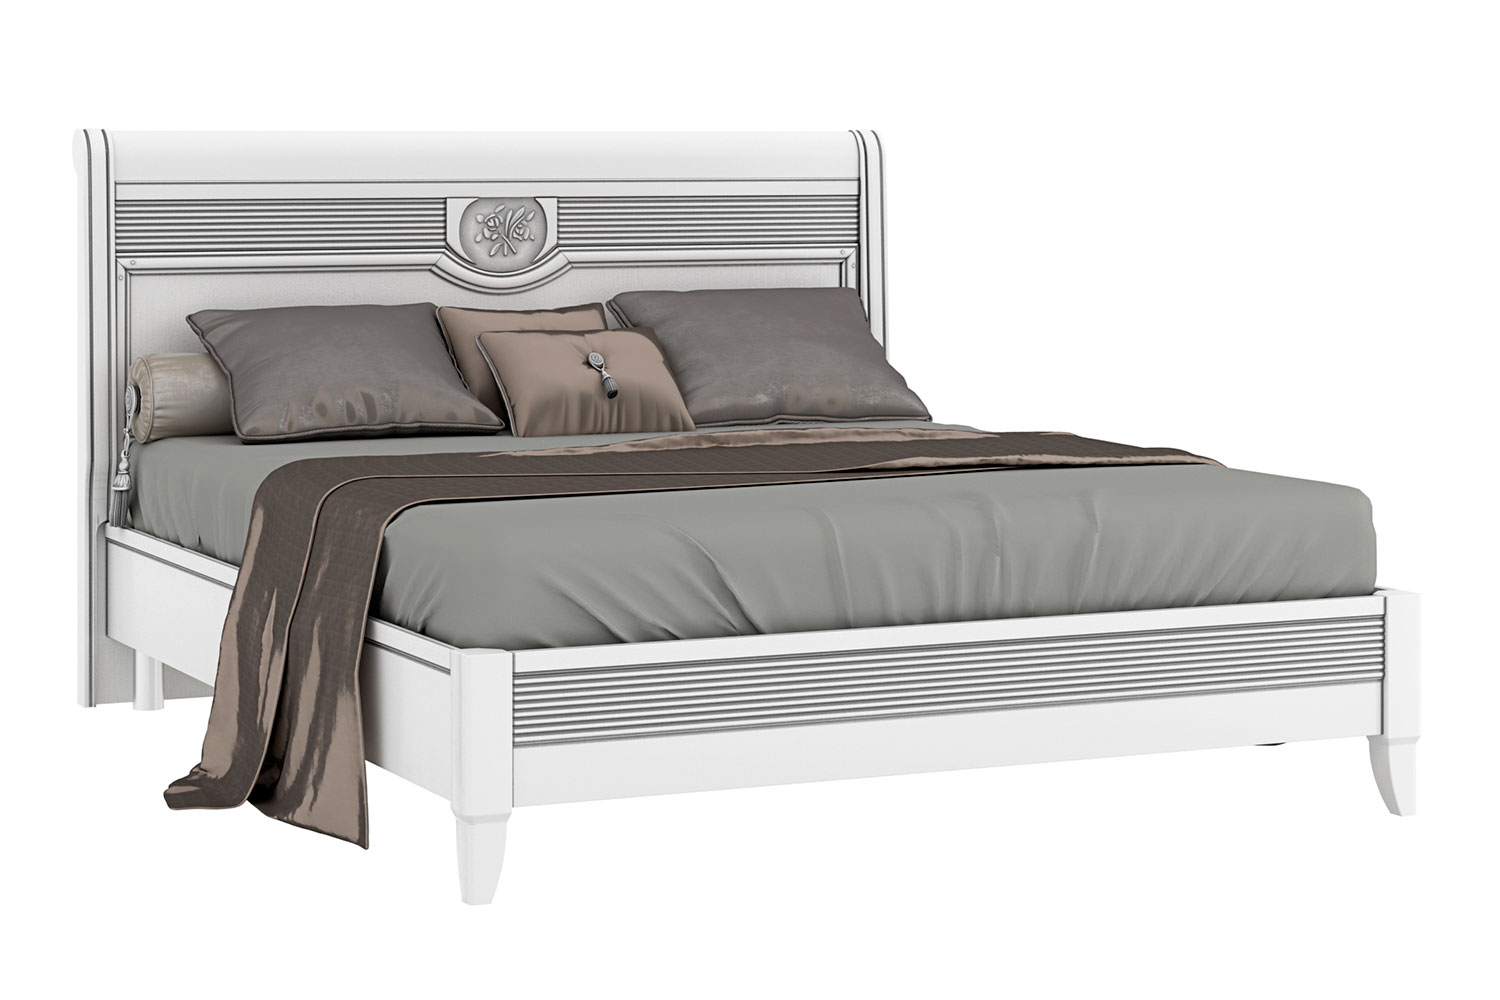 Двуспальные кровати - изображение №2 "Кровать Изотта"  на www.Angstrem-mebel.ru